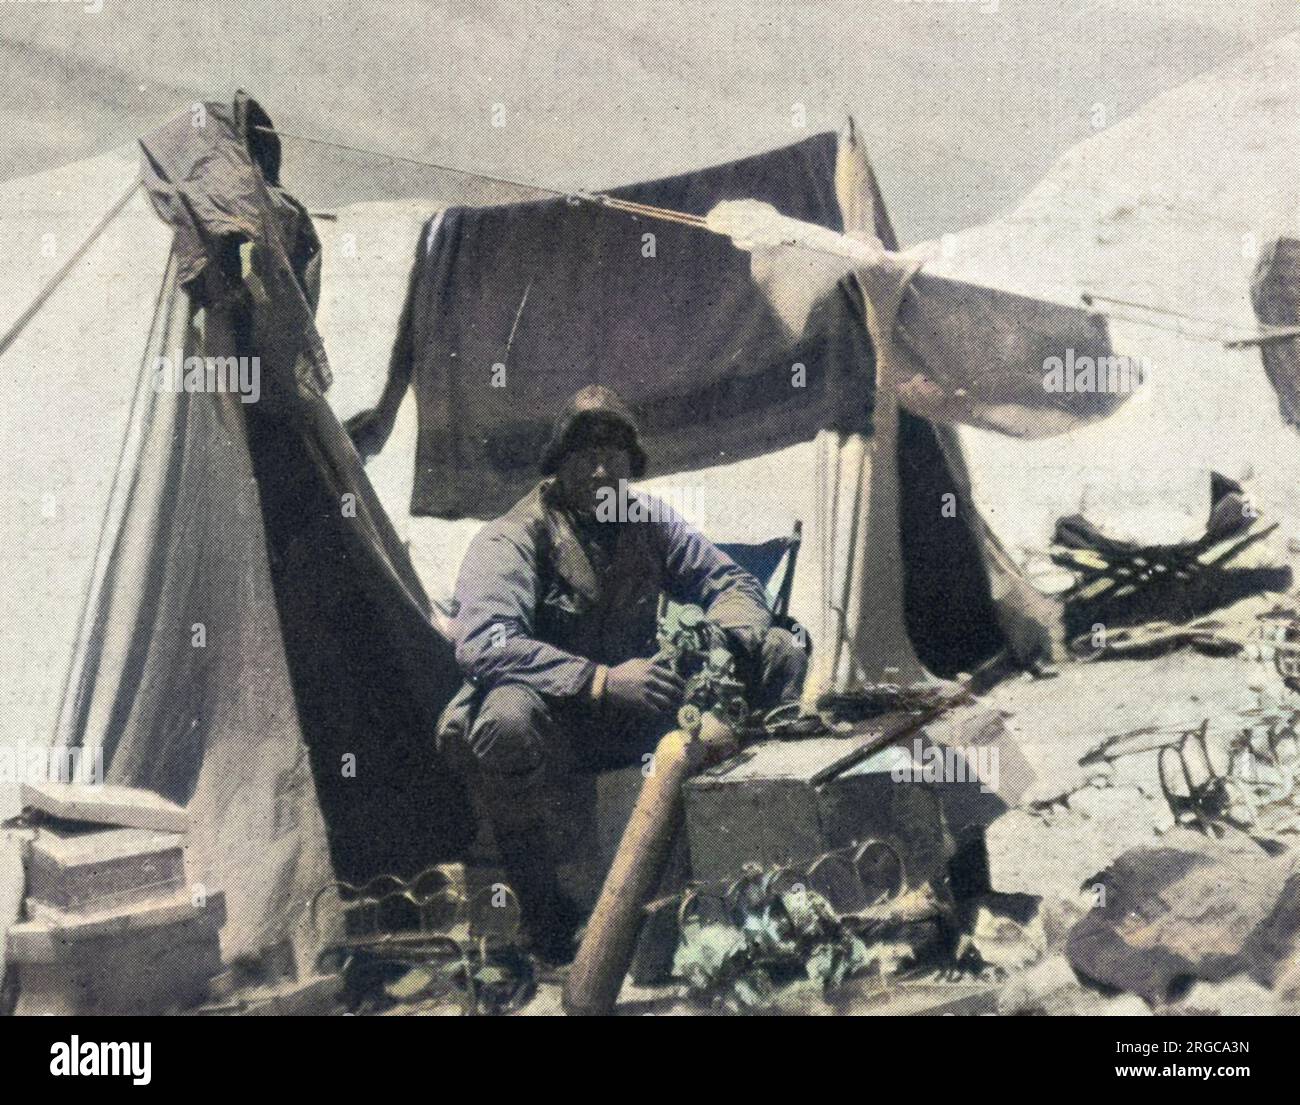 Foto von Andrew Comyn Irvine (1902-24), dem britischen Bergsteiger, der im Everest Expeditionslager 1924 an einer Sauerstoffflasche arbeitete. Irvine, obwohl ein relativ unerfahrener Kletterer, war ein Experte in der Wartung und Reparatur von Sauerstofftanks, und wegen dieser Fähigkeit wurde er ausgewählt, George Leigh Mallory für ihren tödlichen Anschlag auf den Everest zu begleiten. Stockfoto